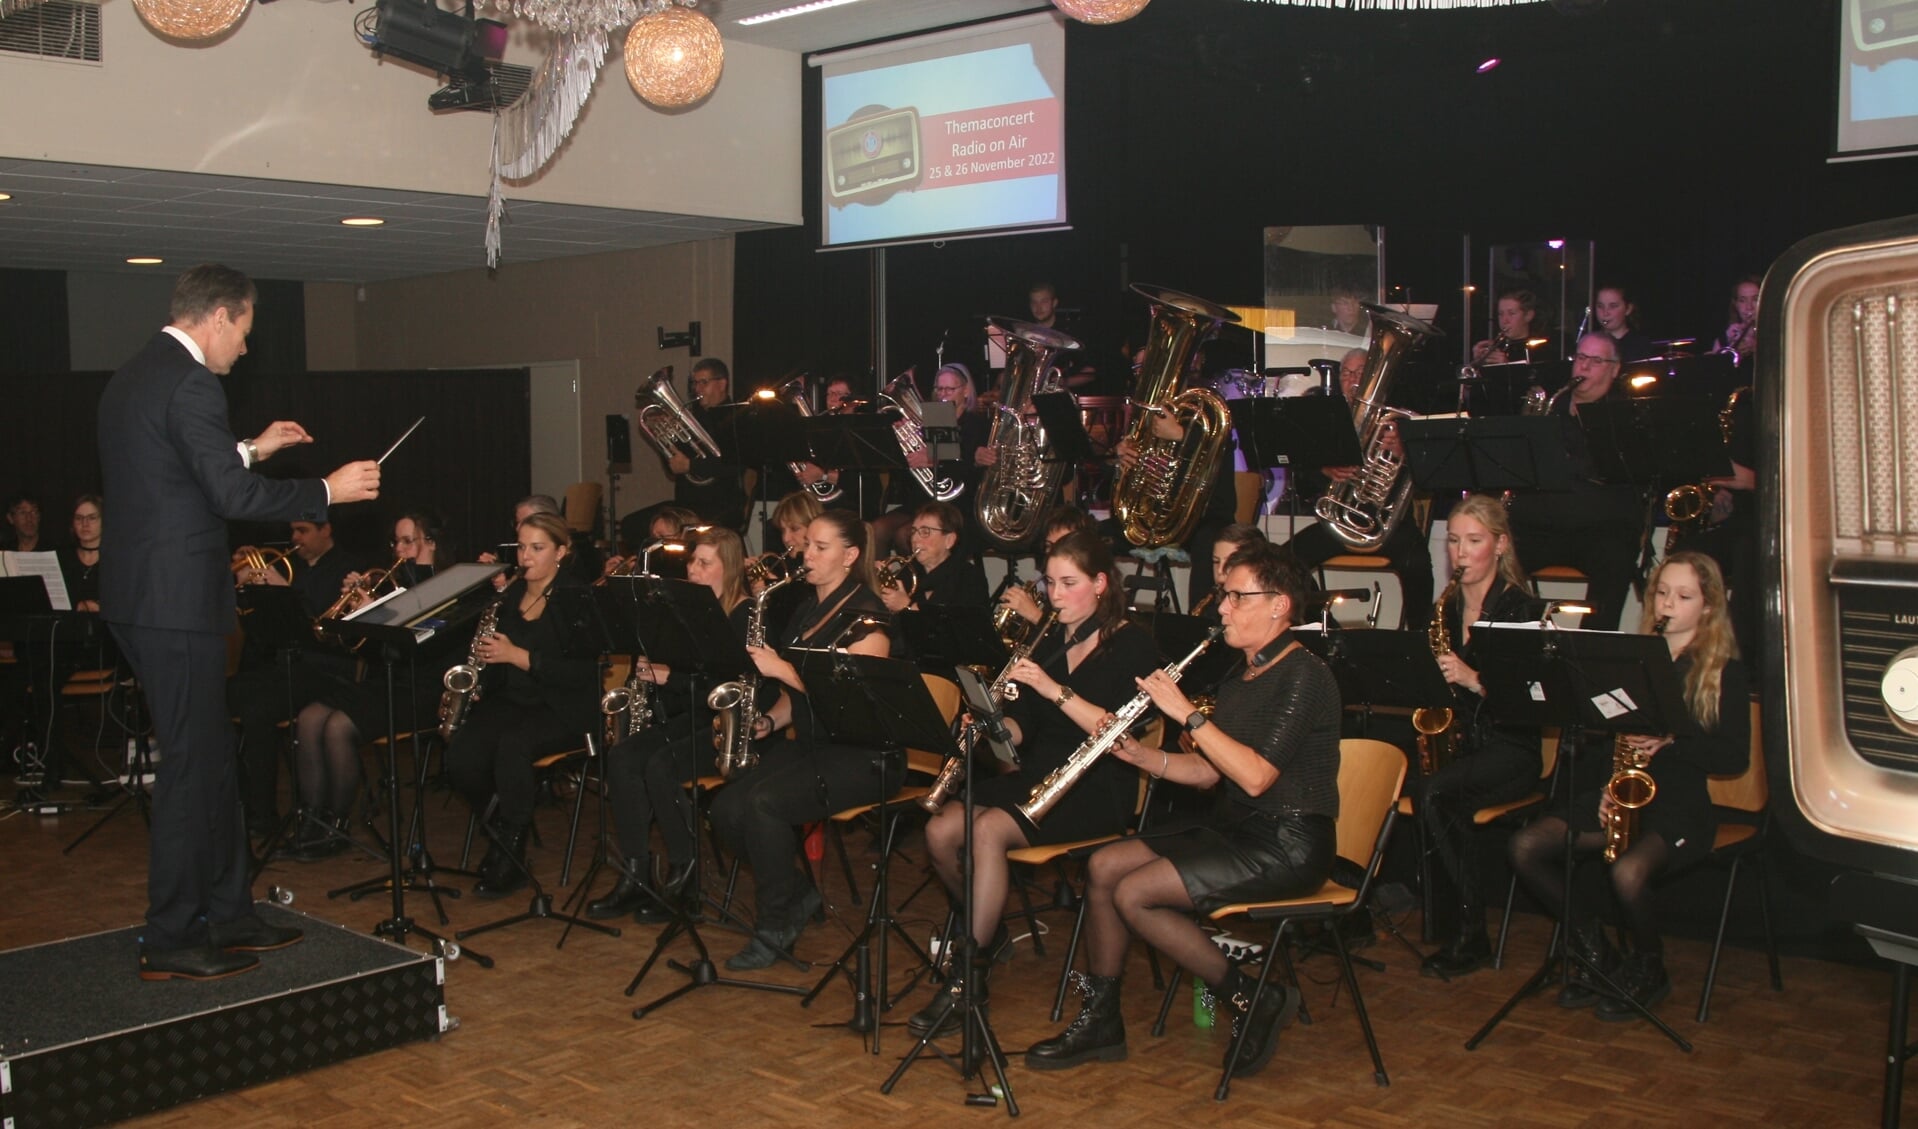 Harmonie Unitas et Fidelitas geeft met fanfare Vriendenkring uit Oeffelt (foto) een concert in zaal Pica Mare.